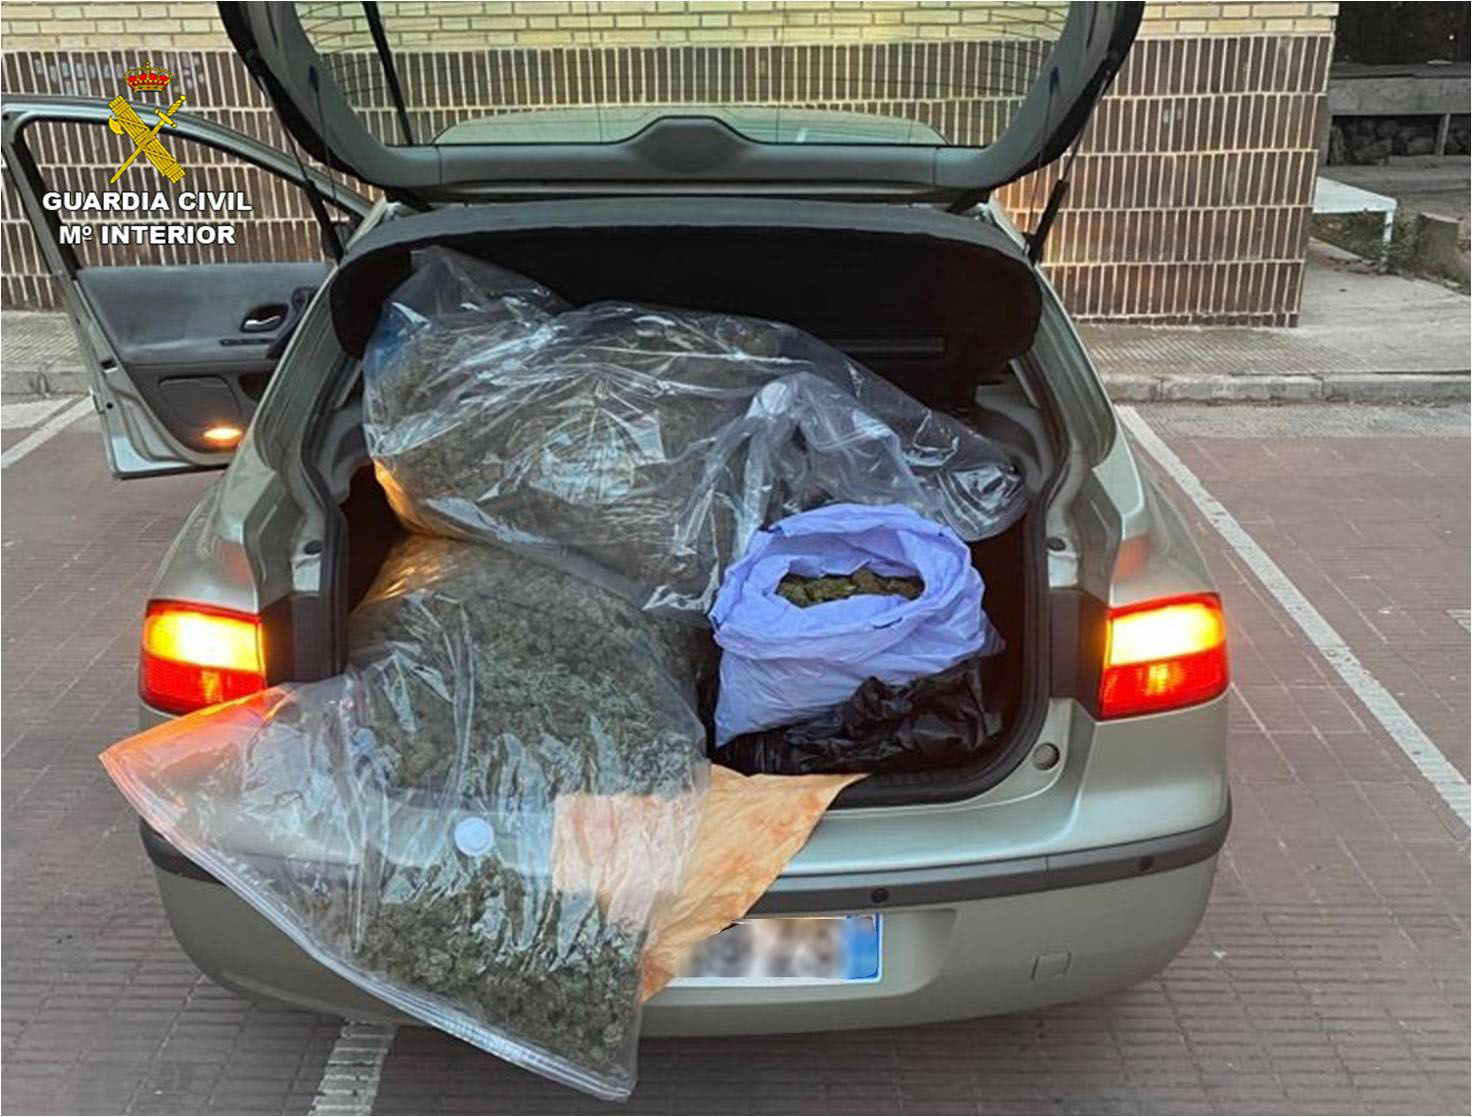 La Guardia Civil incauta 12 kilos de marihuana en el maletero de un vehículo en Villena